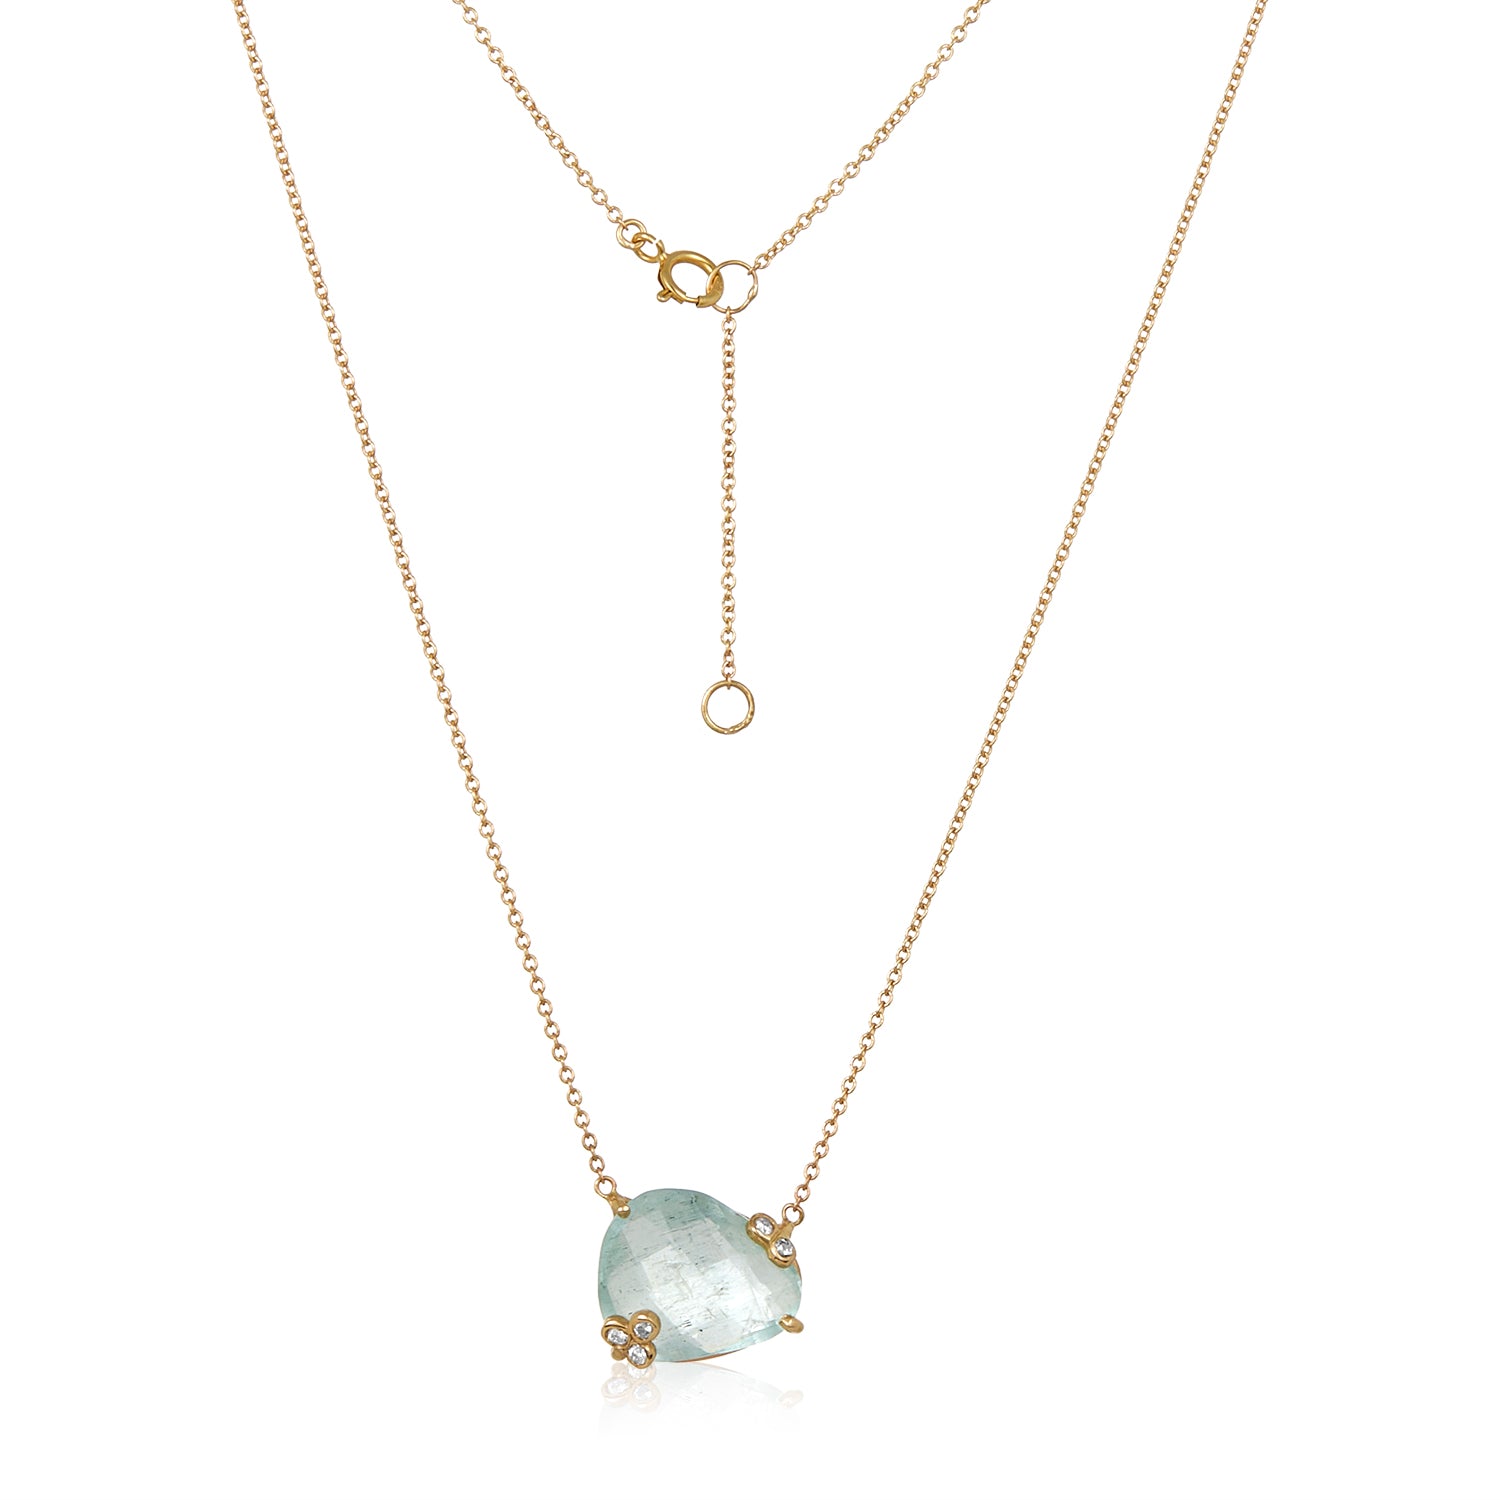 Aqua Diamond Pendant necklace 14k